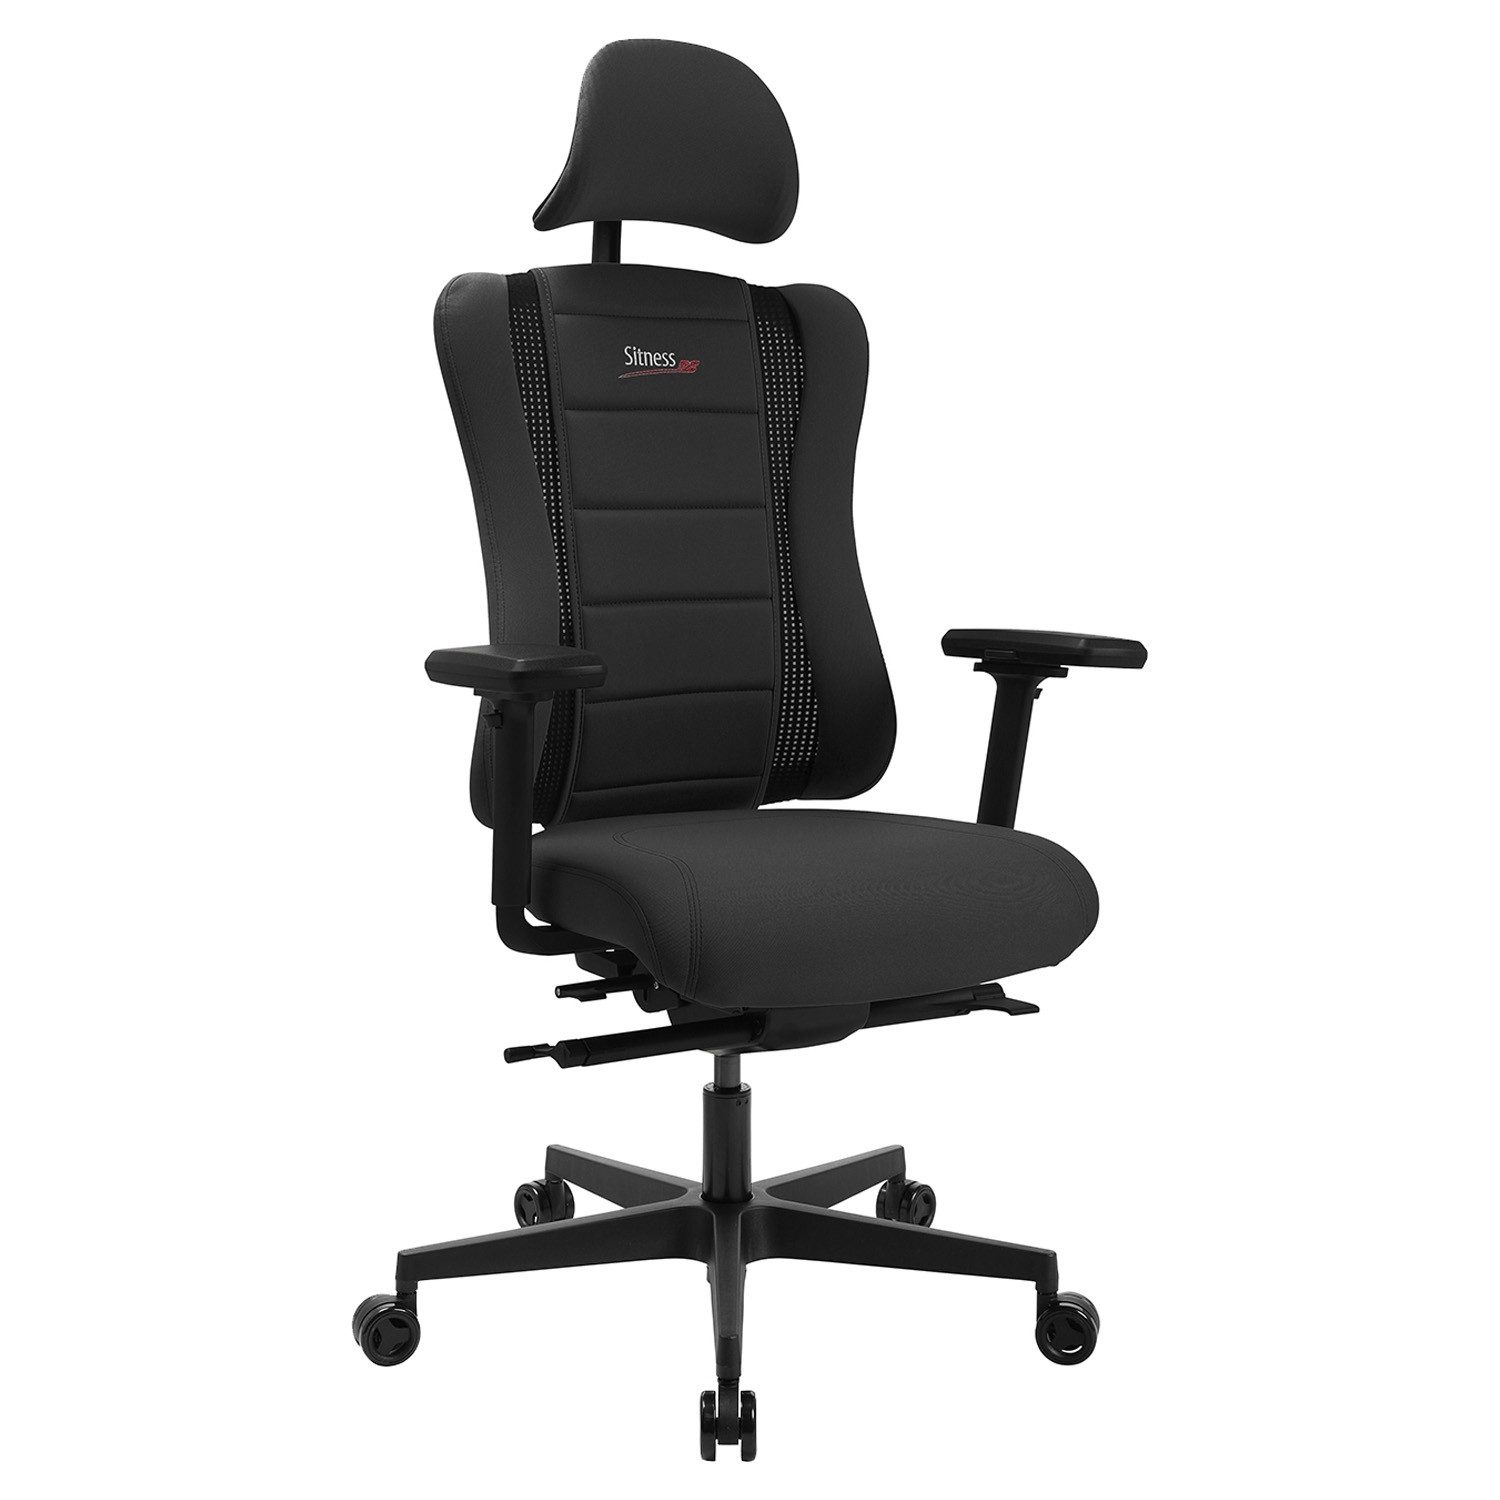 TOPSTAR Gaming-Stuhl SINTESS RS PRO 2020, Schwarz, Kunstleder, Stoff, 3D-Armlehnen, Höhenverstellbar, verstellbare Kopfstütze